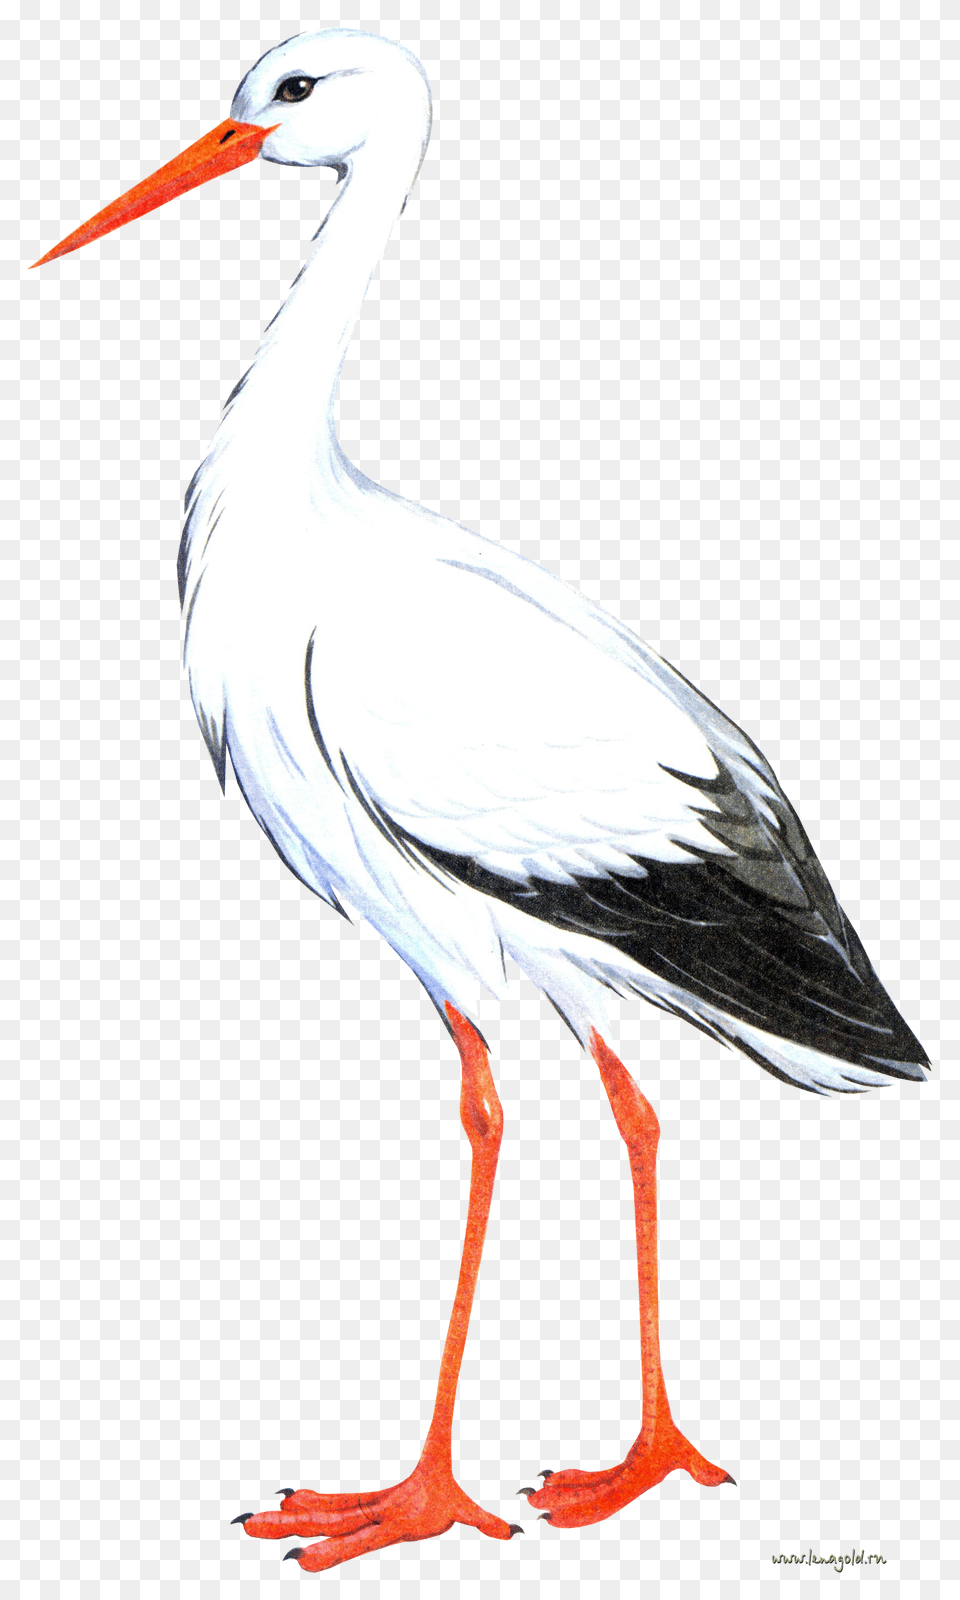 Stork, Animal, Bird, Waterfowl, Crane Bird Png Image